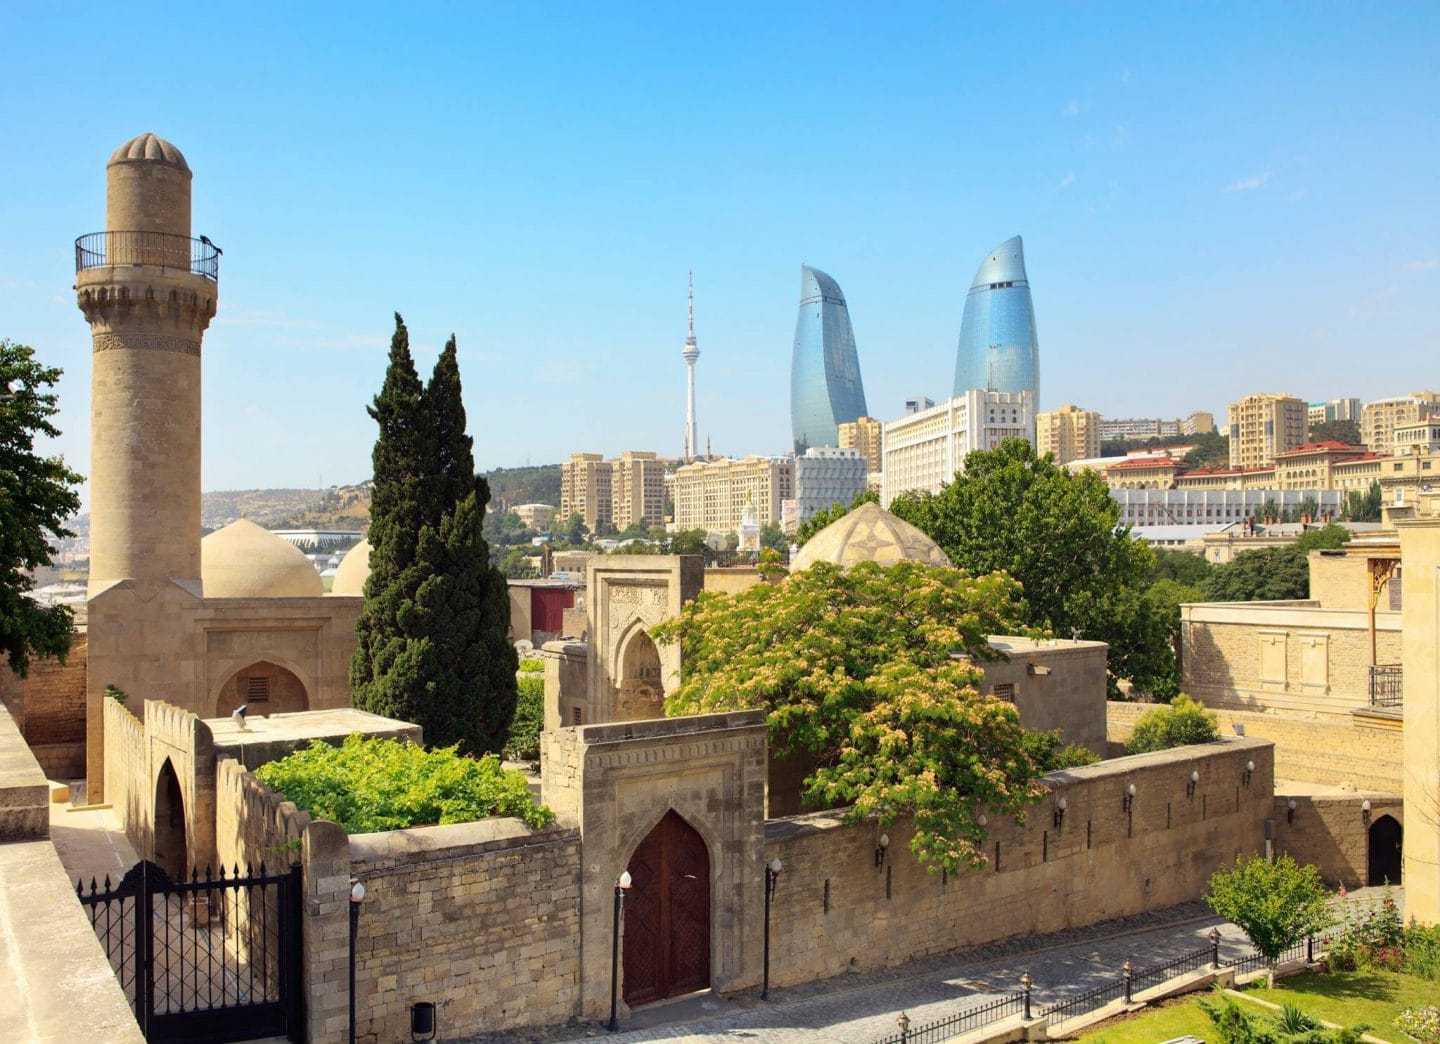 THings to do in Baku